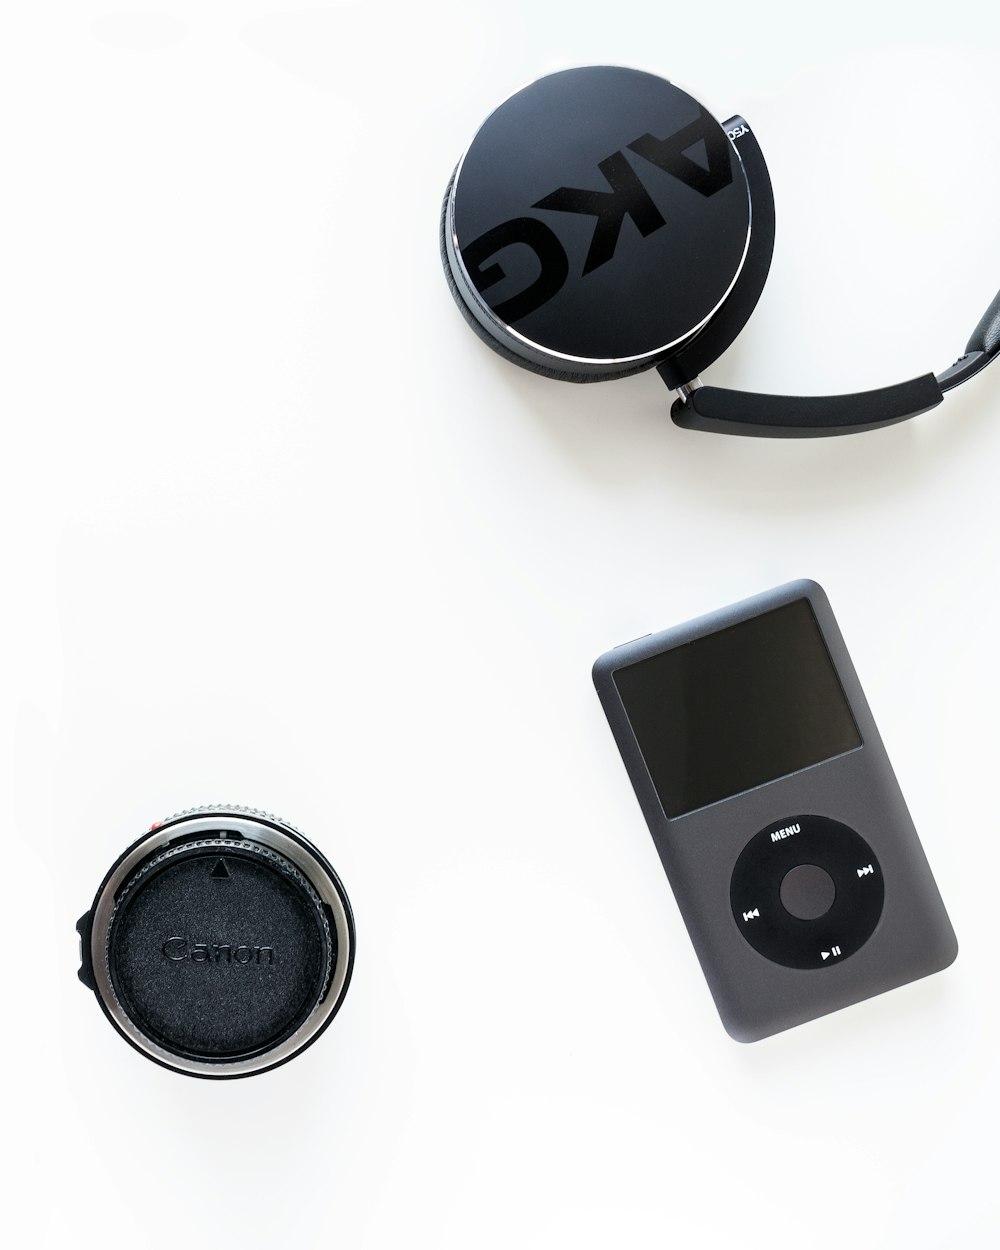 iPod clásico negro junto a la lente de la cámara Canon negra